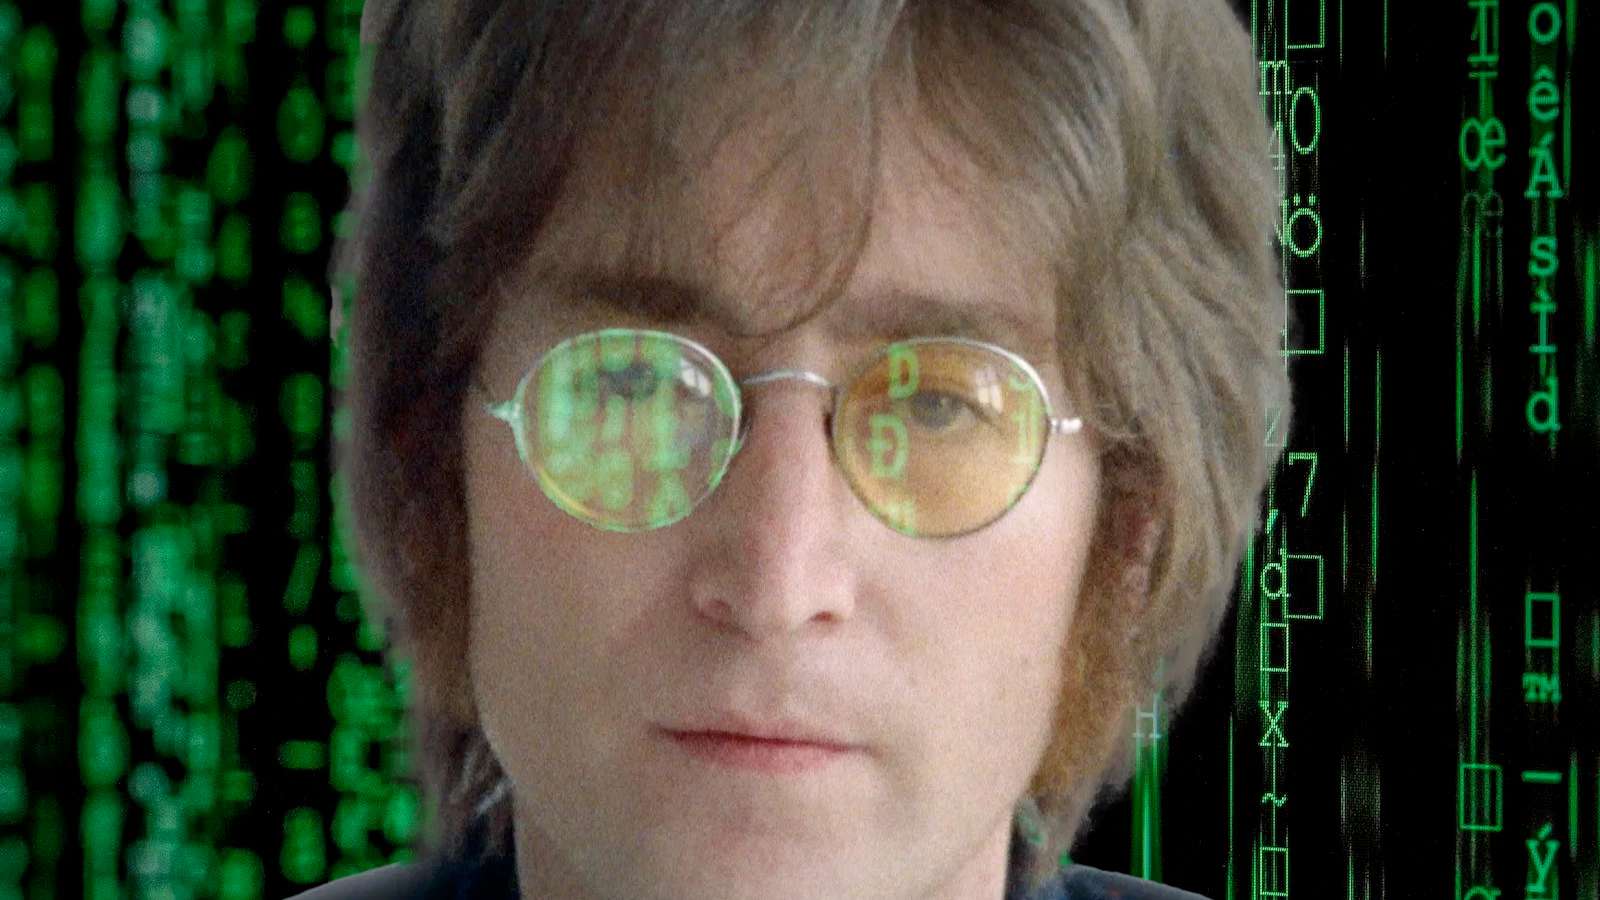 John Lennon of the Beatles in the Matrix